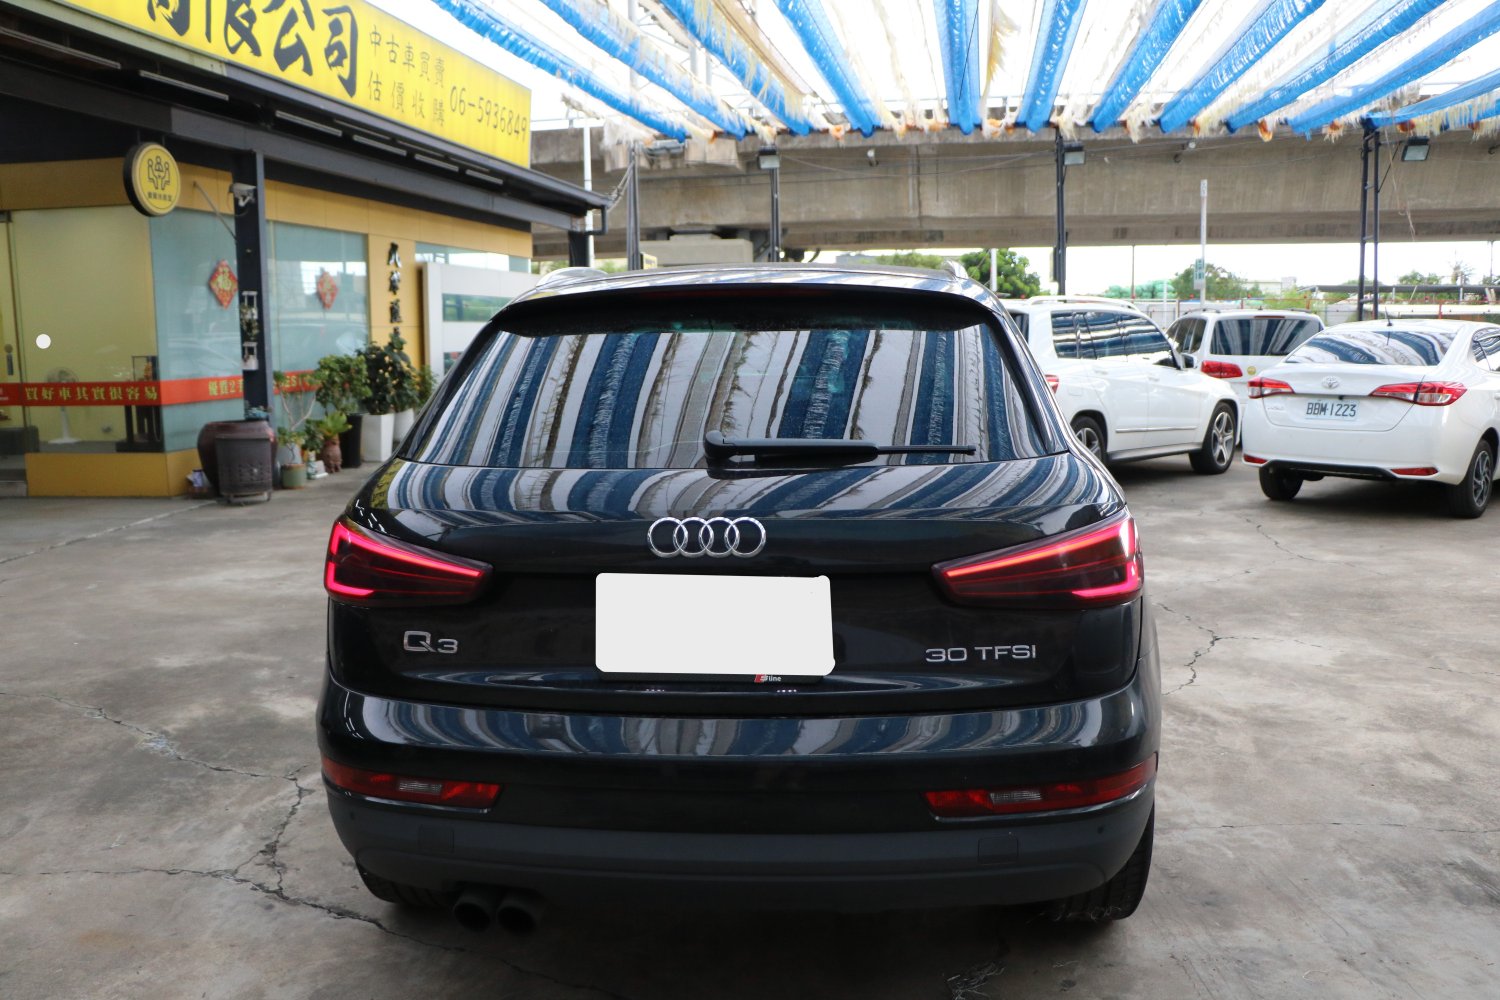 Audi 奧迪 ／ Q3 ／ 年 ／ 2016 年 Audi Q3 黑色 奧迪中古車 ／ 九州欣旺汽車 (台南)